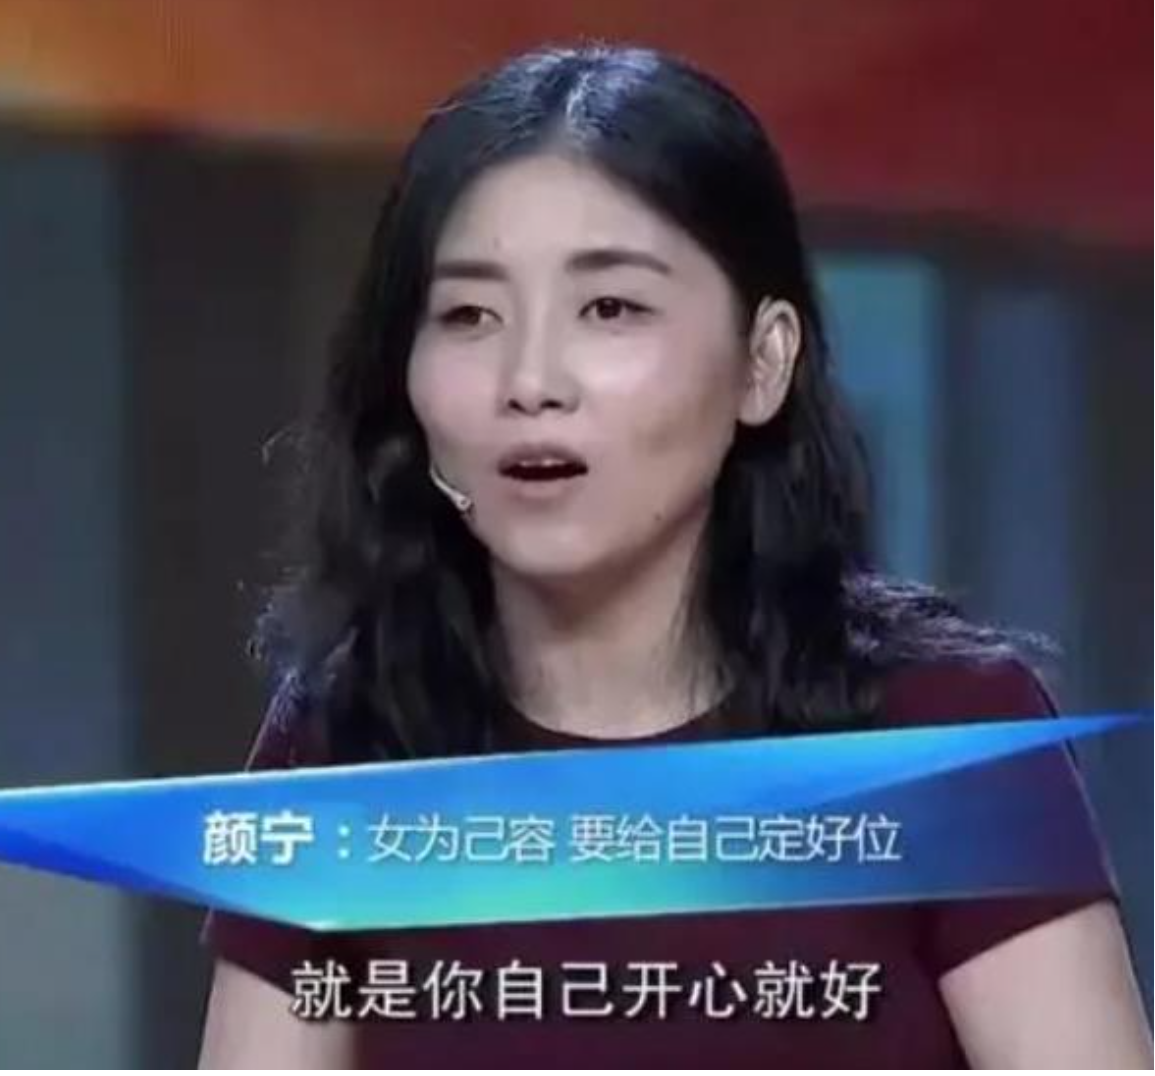 还有2017年,颜宁参加央视《开讲啦》栏目时,主持人撒贝宁称呼她为女